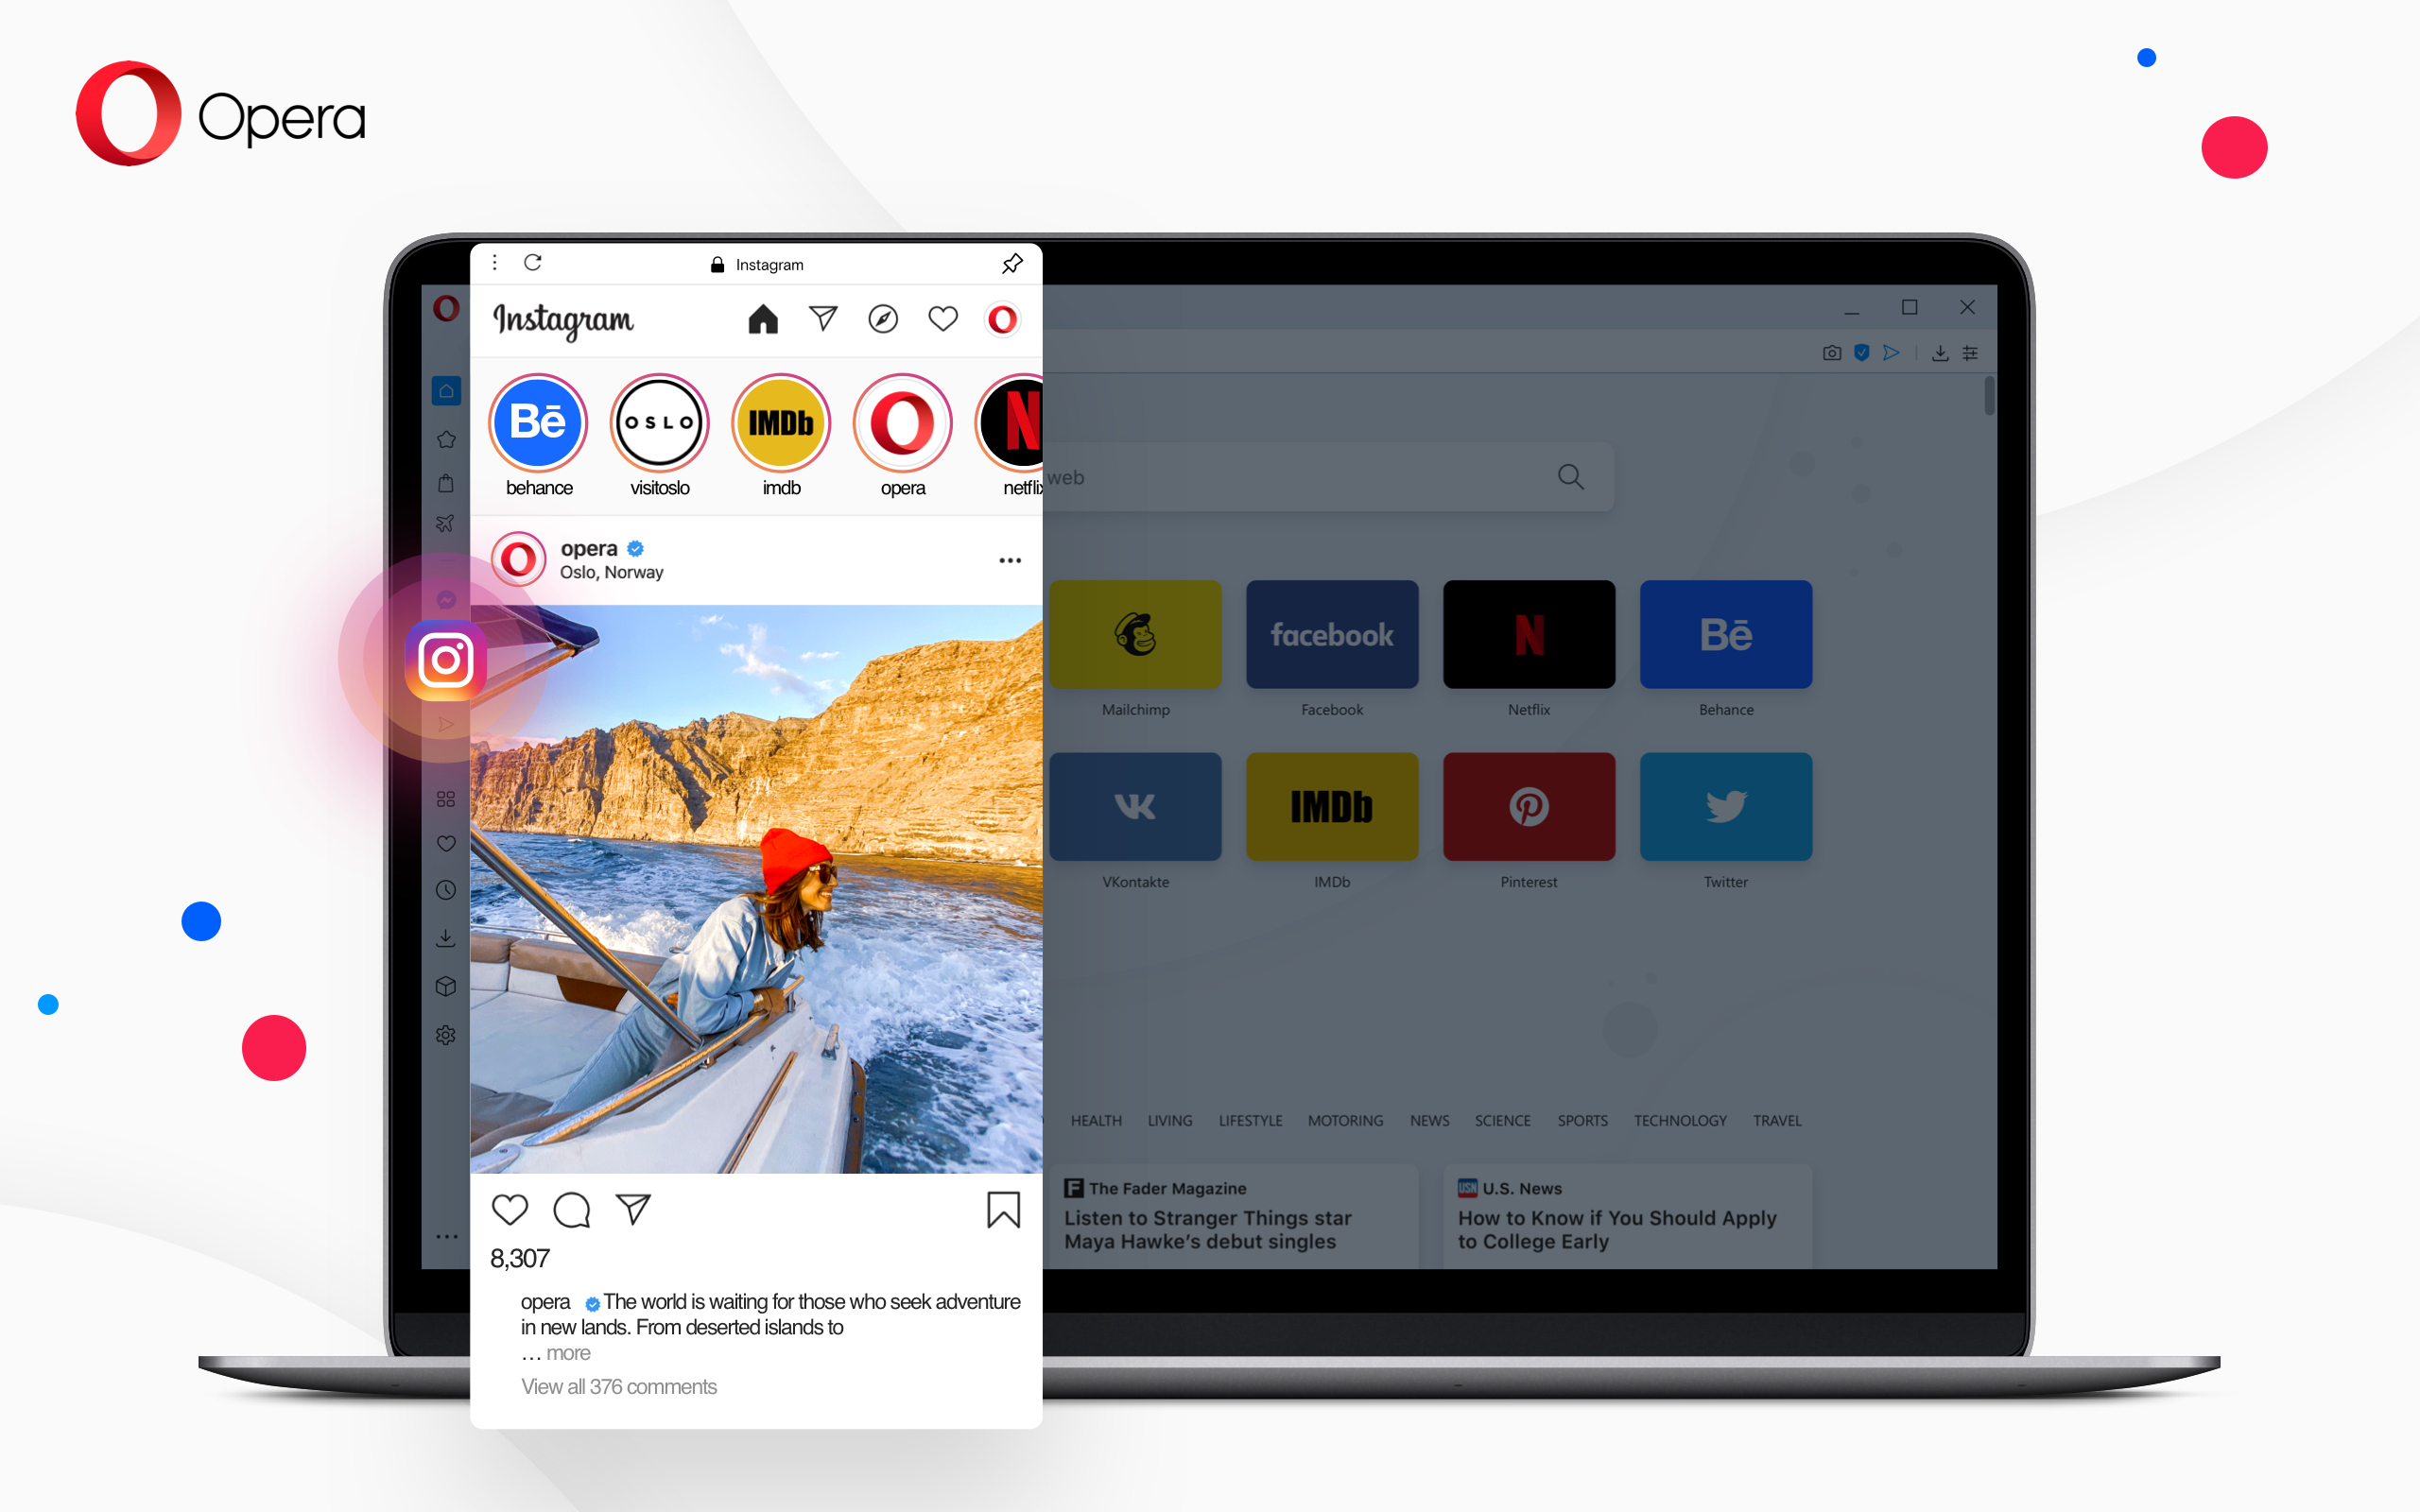 Opera instagram built in desktop